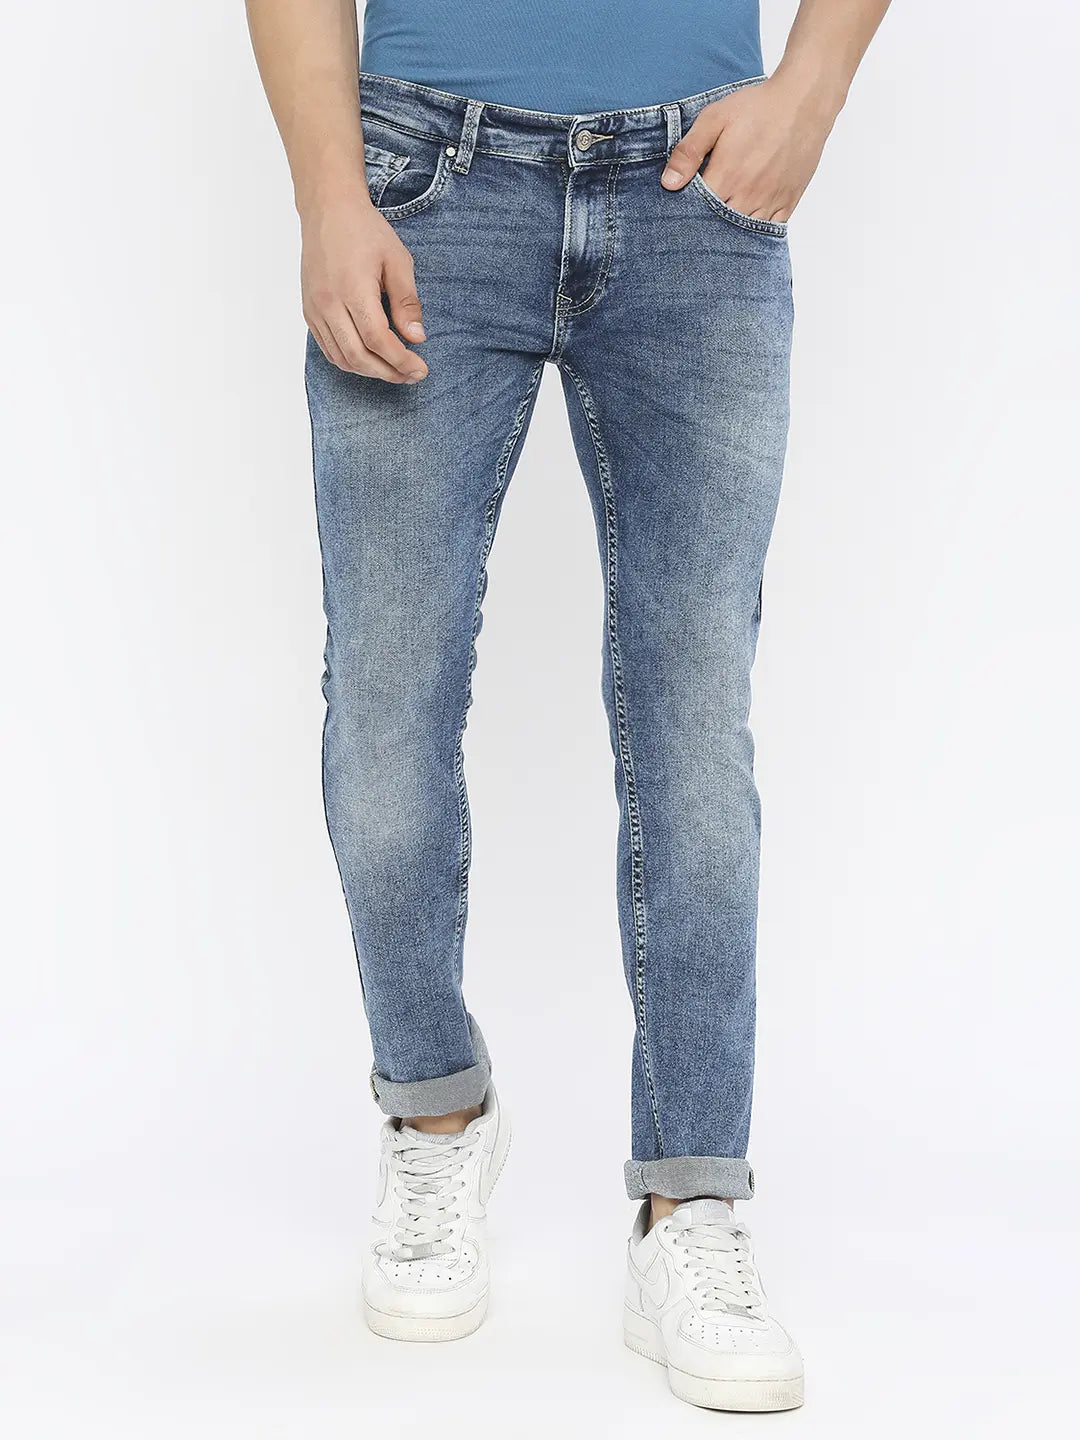 Men's Skinny Fit Jeans - Goodfellow & Co | eBay